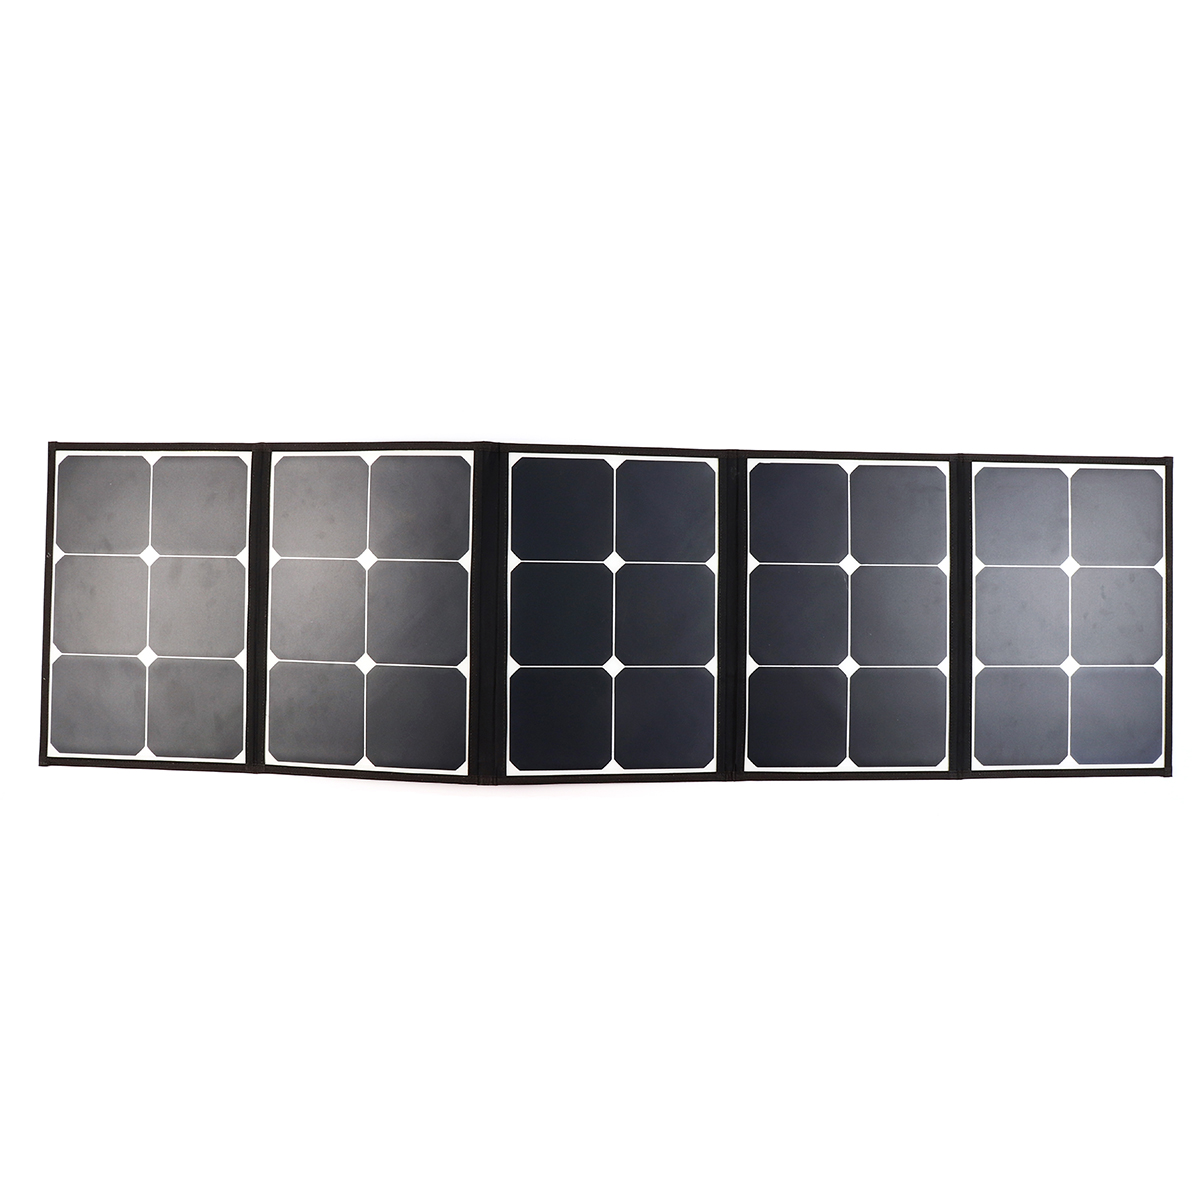 Sunpower-Solar-Folding-Bag-With-laptop-Connector-10PCS-DC-Charging-Line-1PCS-Car-charger-1PCS-Batter-1525145